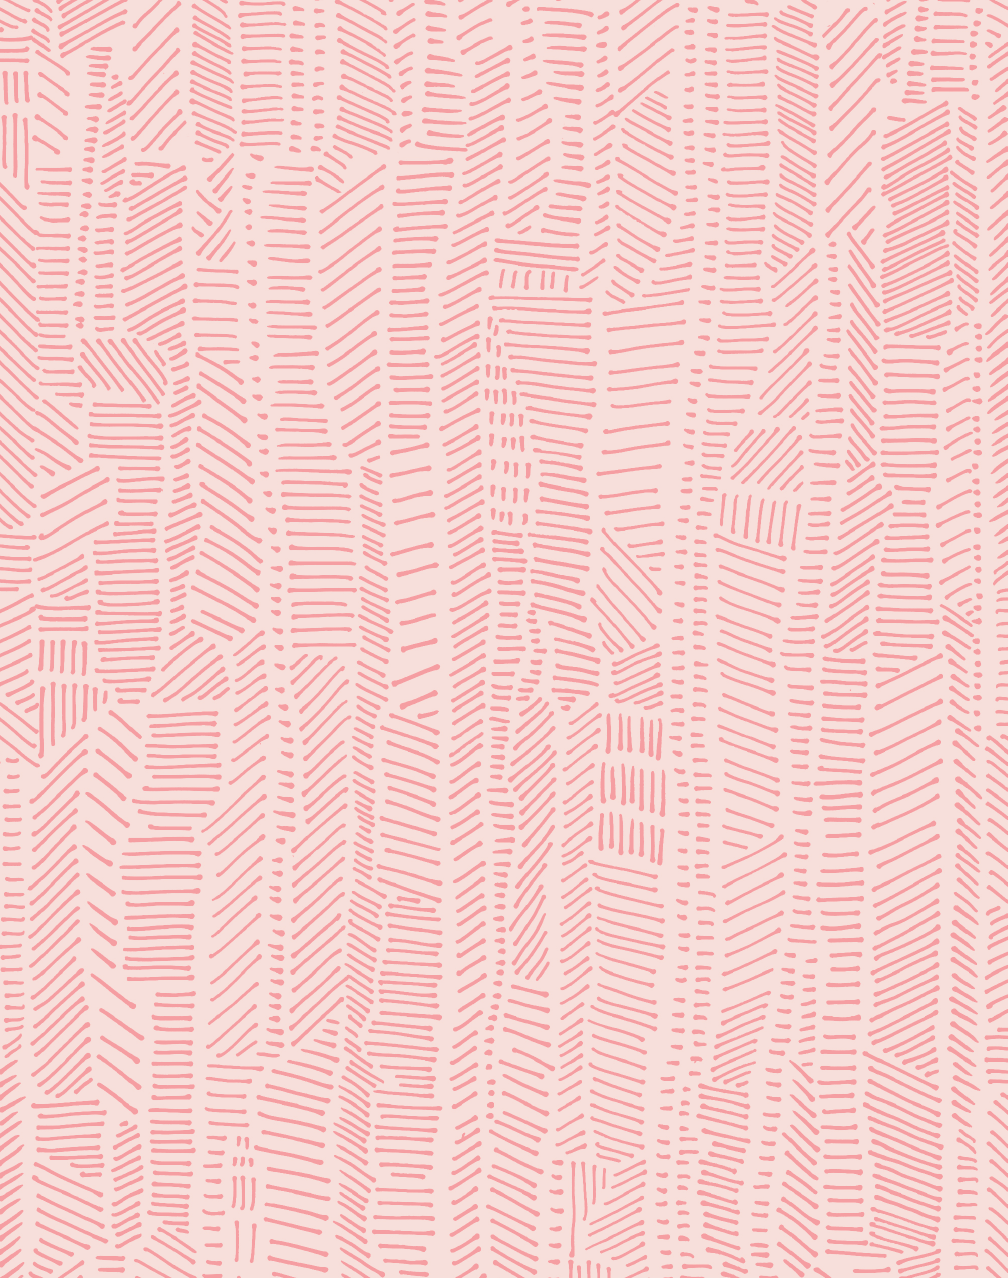 Linear Field, Powder Pink